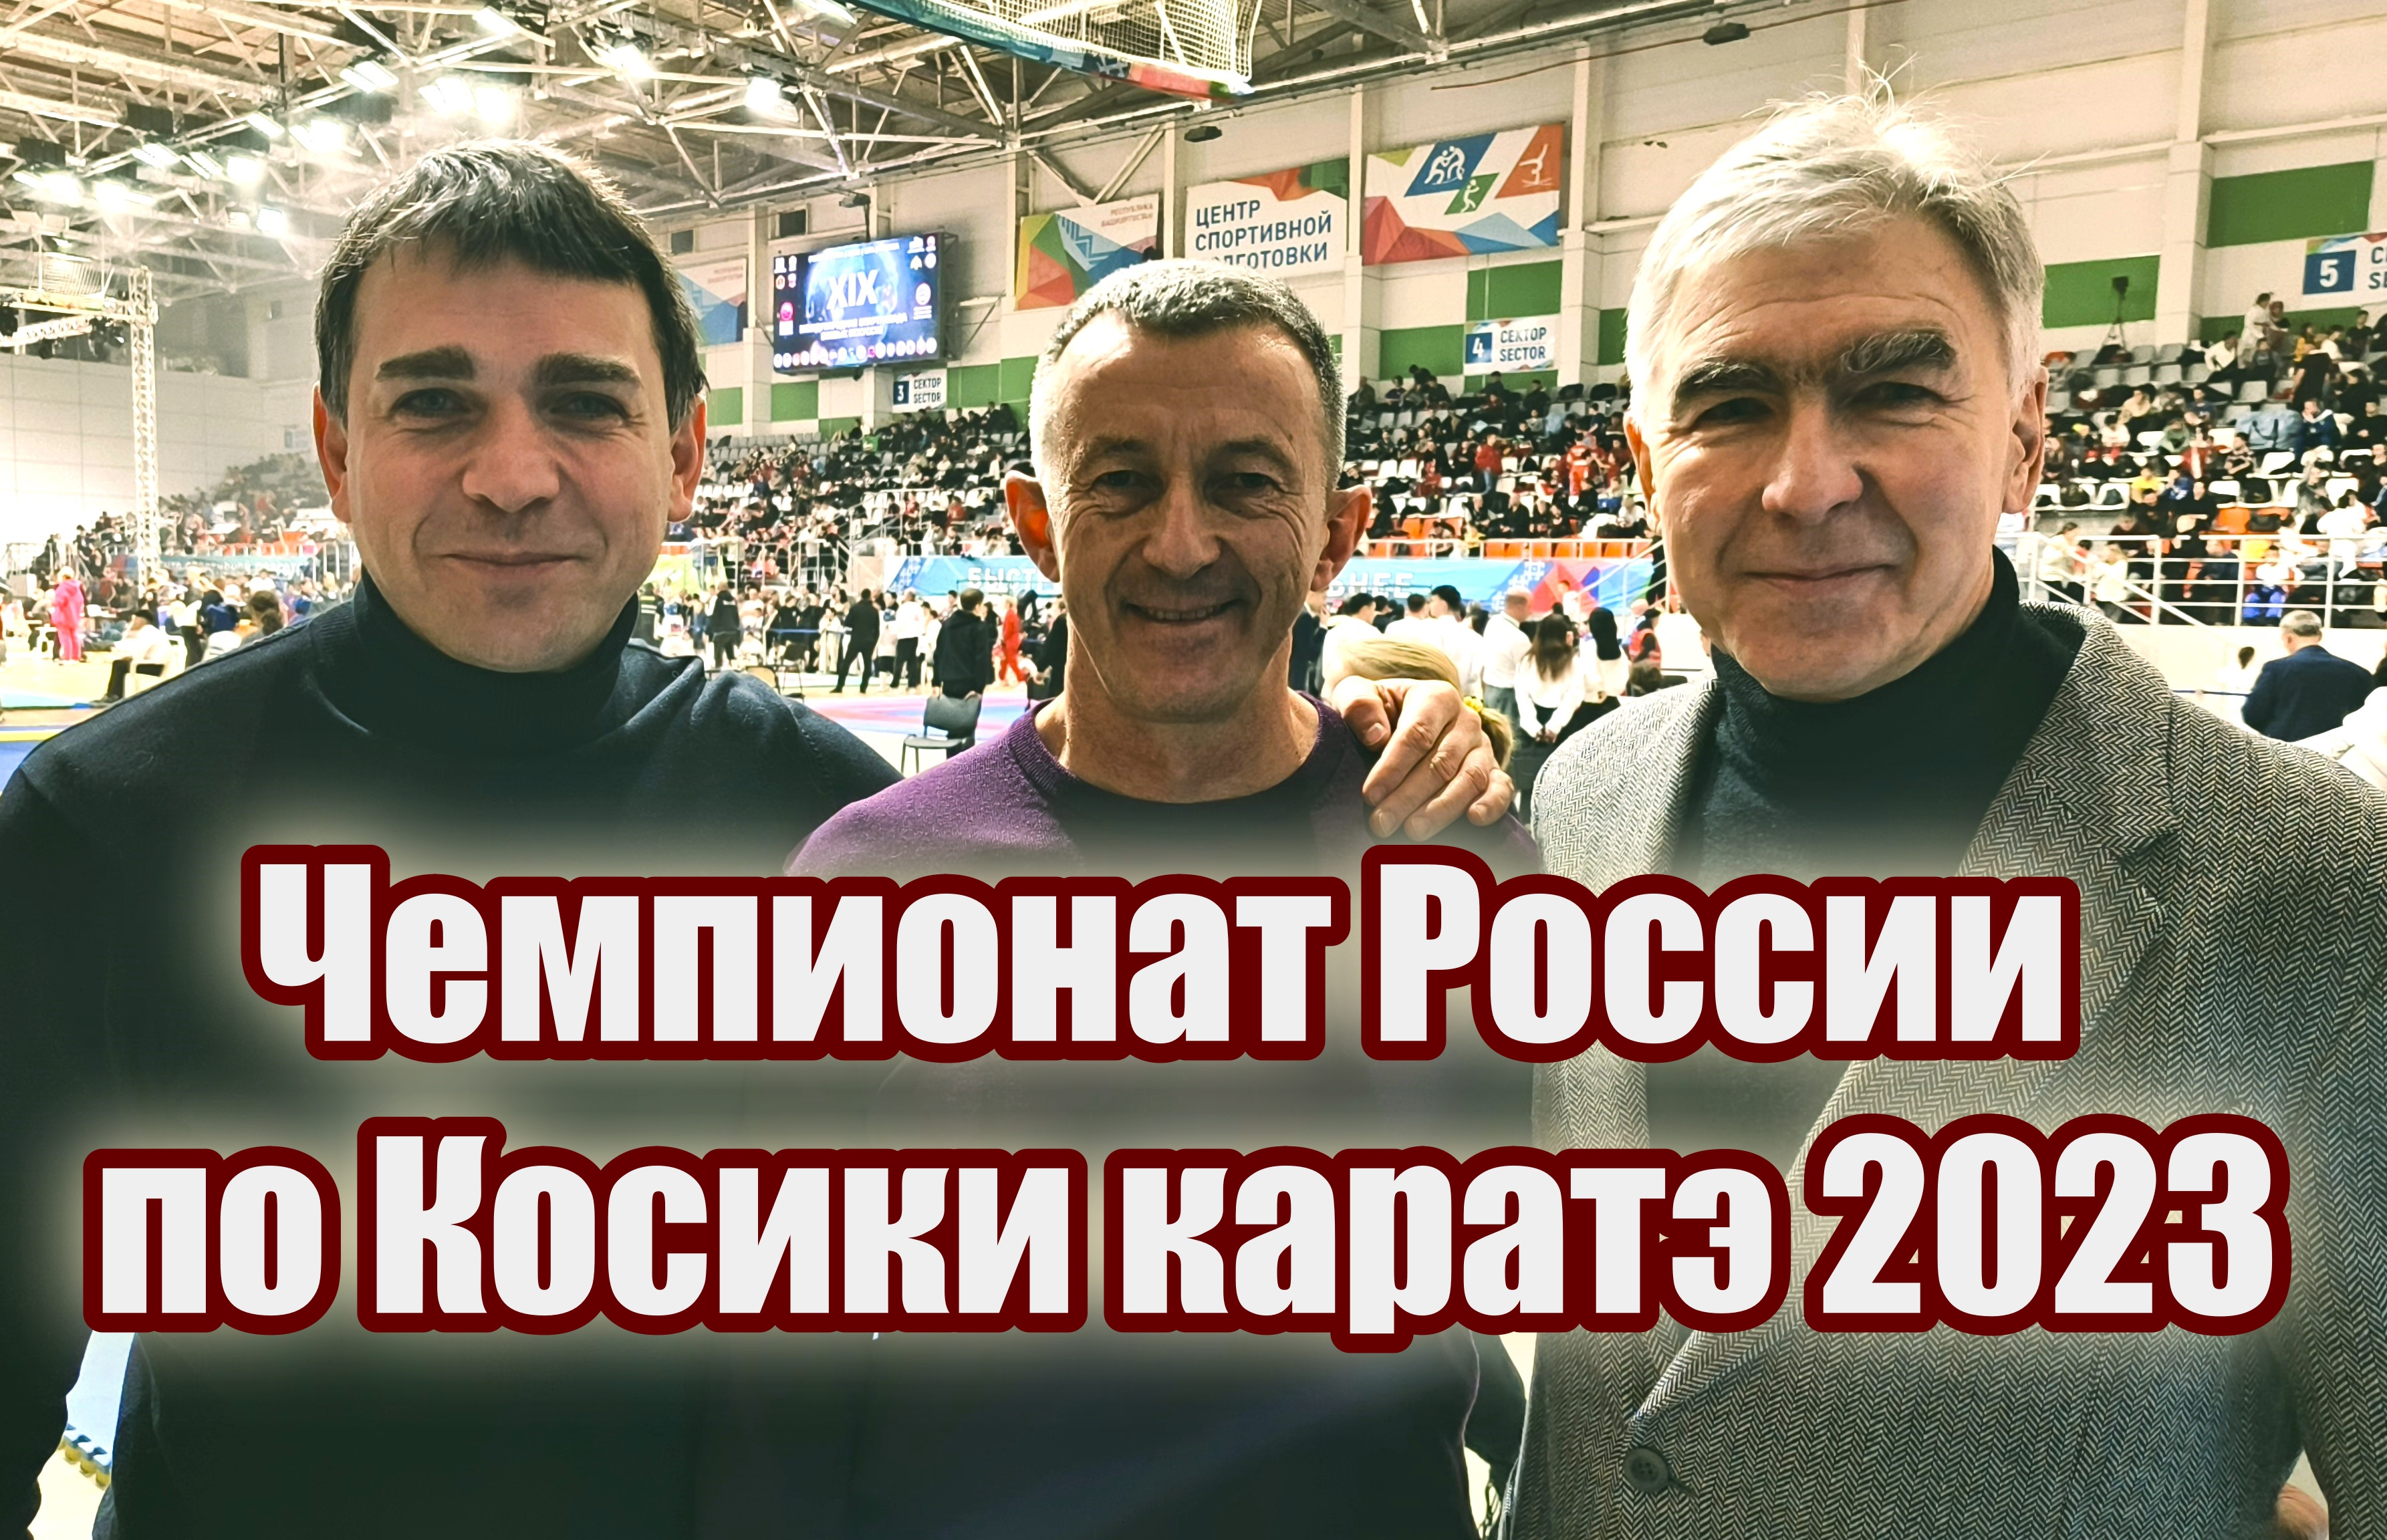 Чемпионат России по Косики каратэ 2023 в столице Башкортостана городе Уфе.